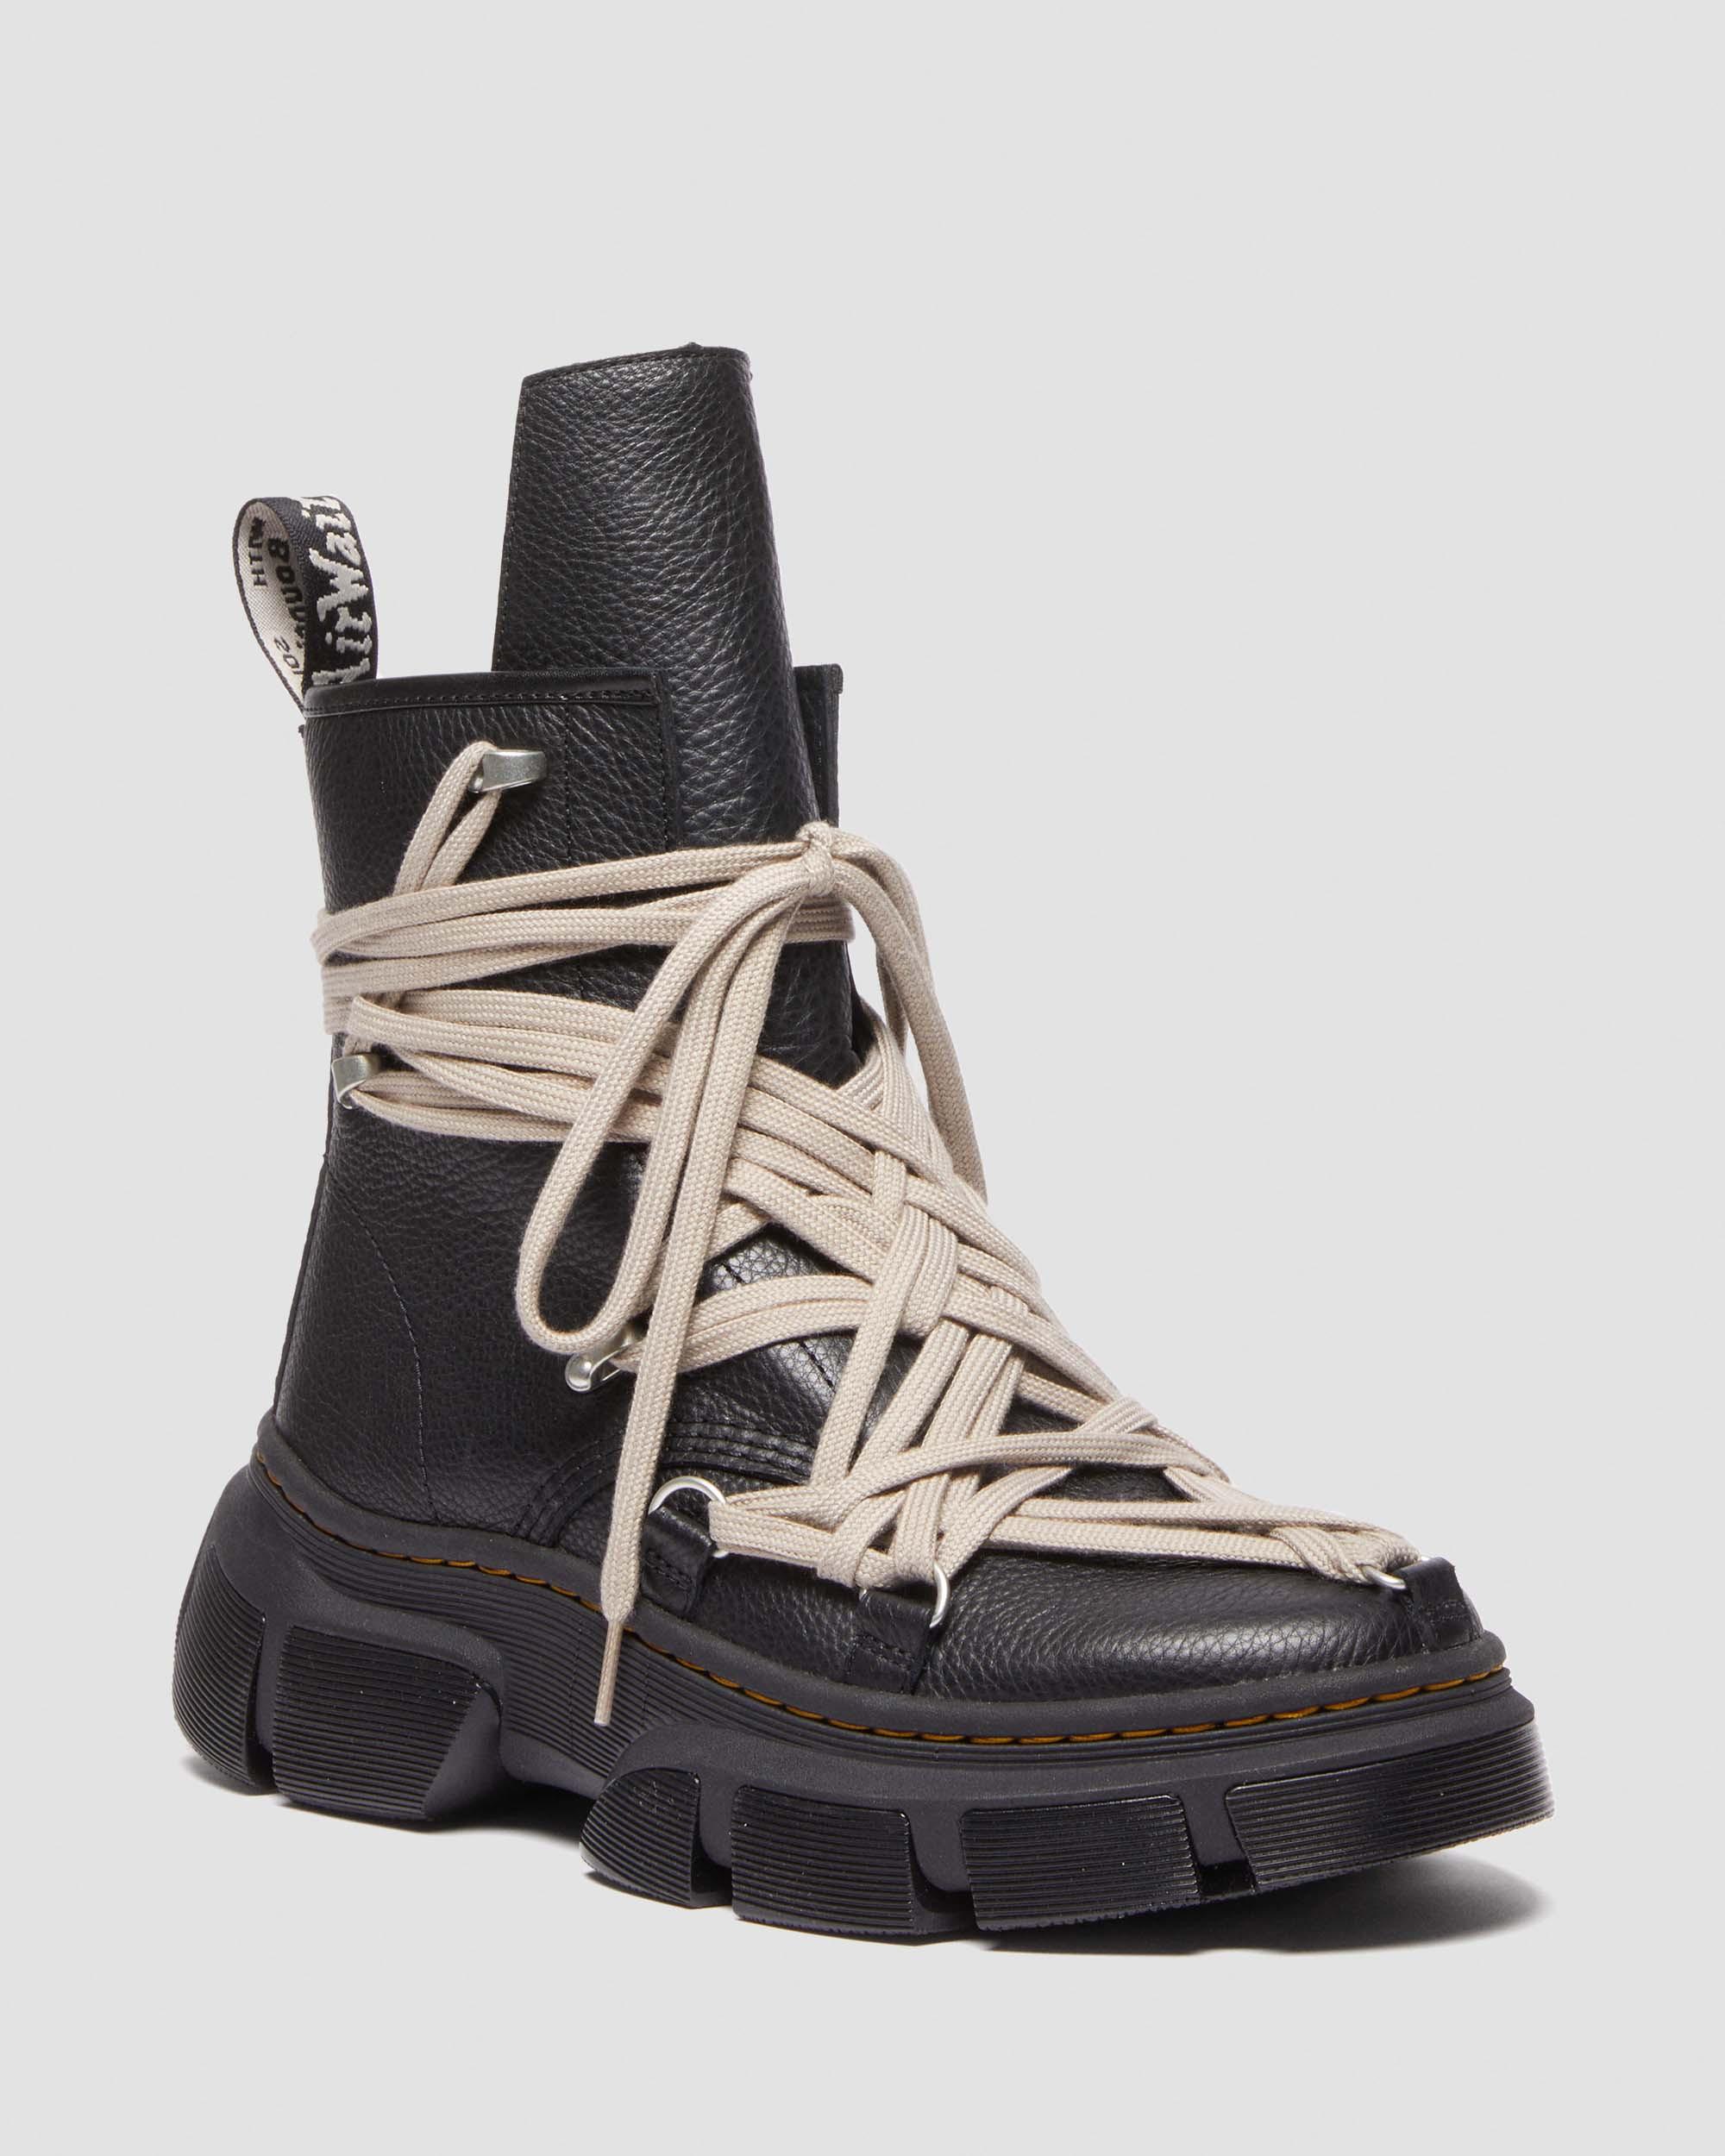 【送料無料安い】Rick Owens × Dr. Martens 1460 Black US8 靴